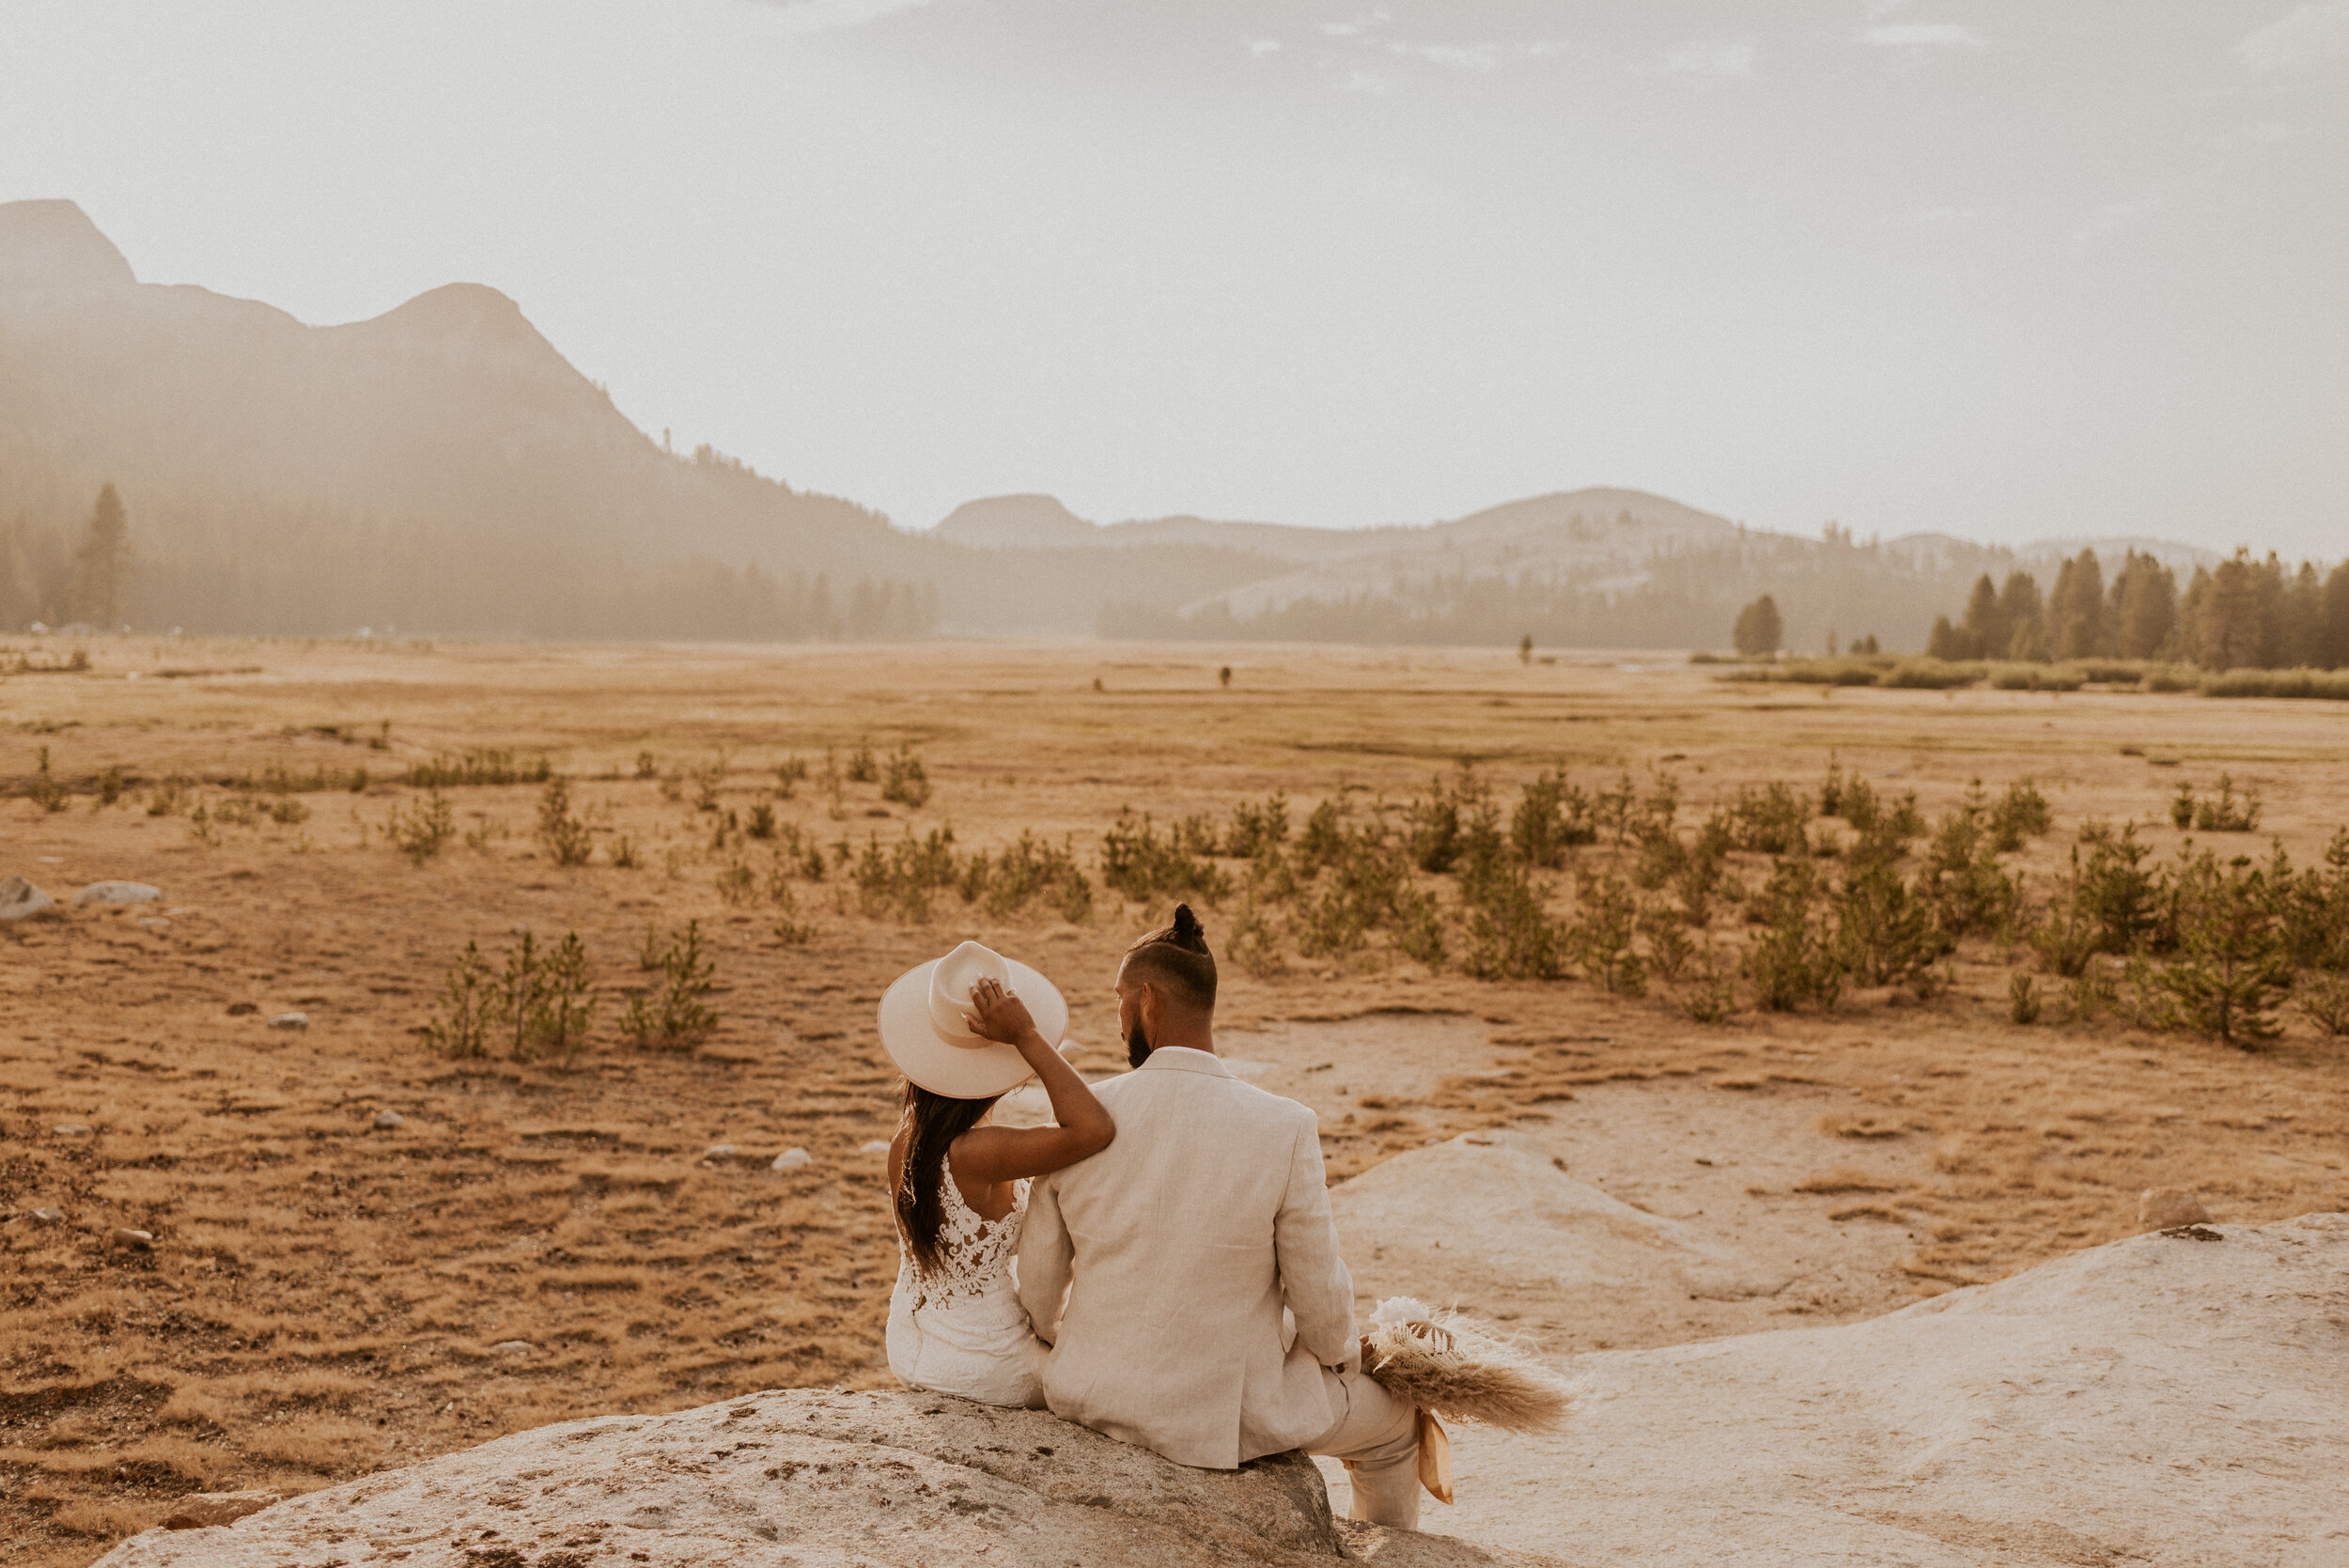 Tuolumne Meadows Elopement | Eloping in Yosemite National Park | Adventure Elopement Wedding | Yosemite Elopement Photographer | How to Elope